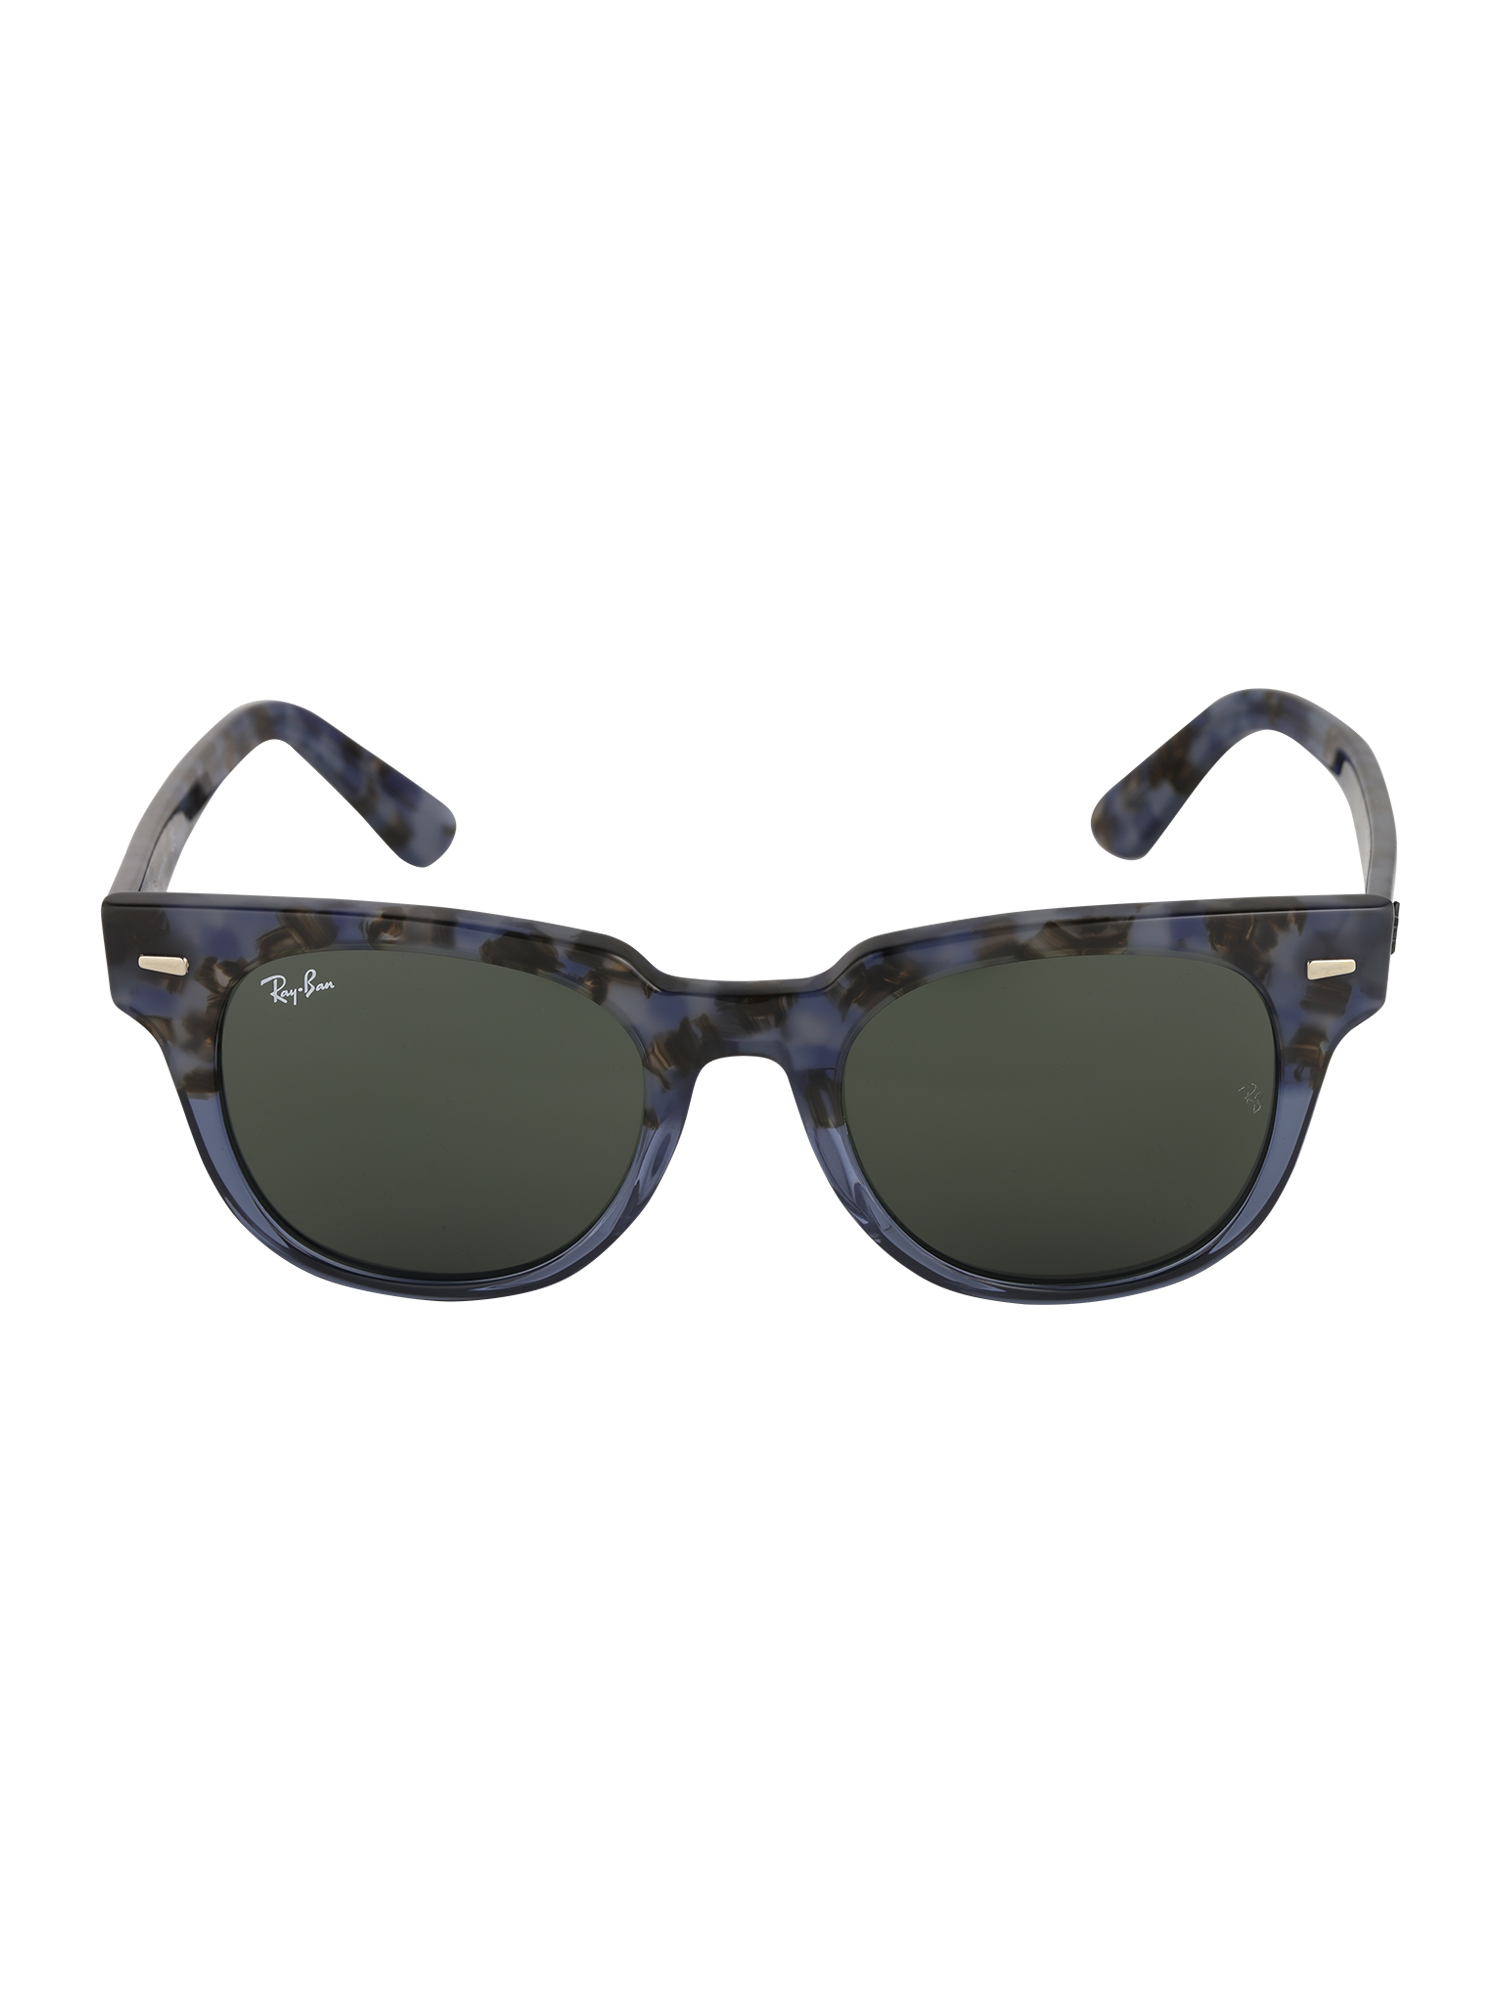 Ray-Ban Okulary przeciwsłoneczne METEOR w kolorze Niebieski, Szarym 